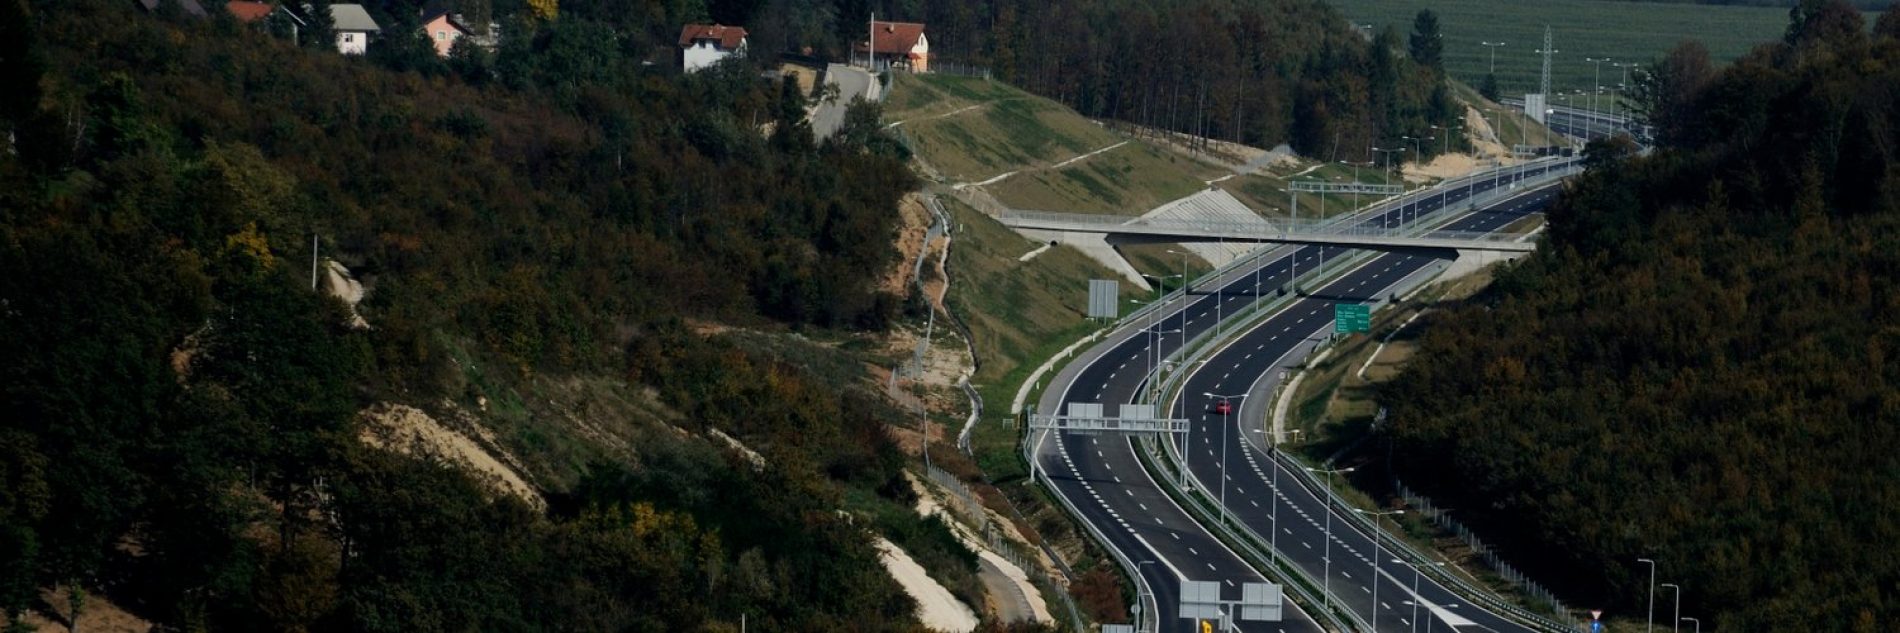 Najveći investicijski ugovor u posljednjih 30 godina u Bosni i Hercegovini: Potpisan ugovor o izgradnji dionice autoceste Medakovo – Ozimice